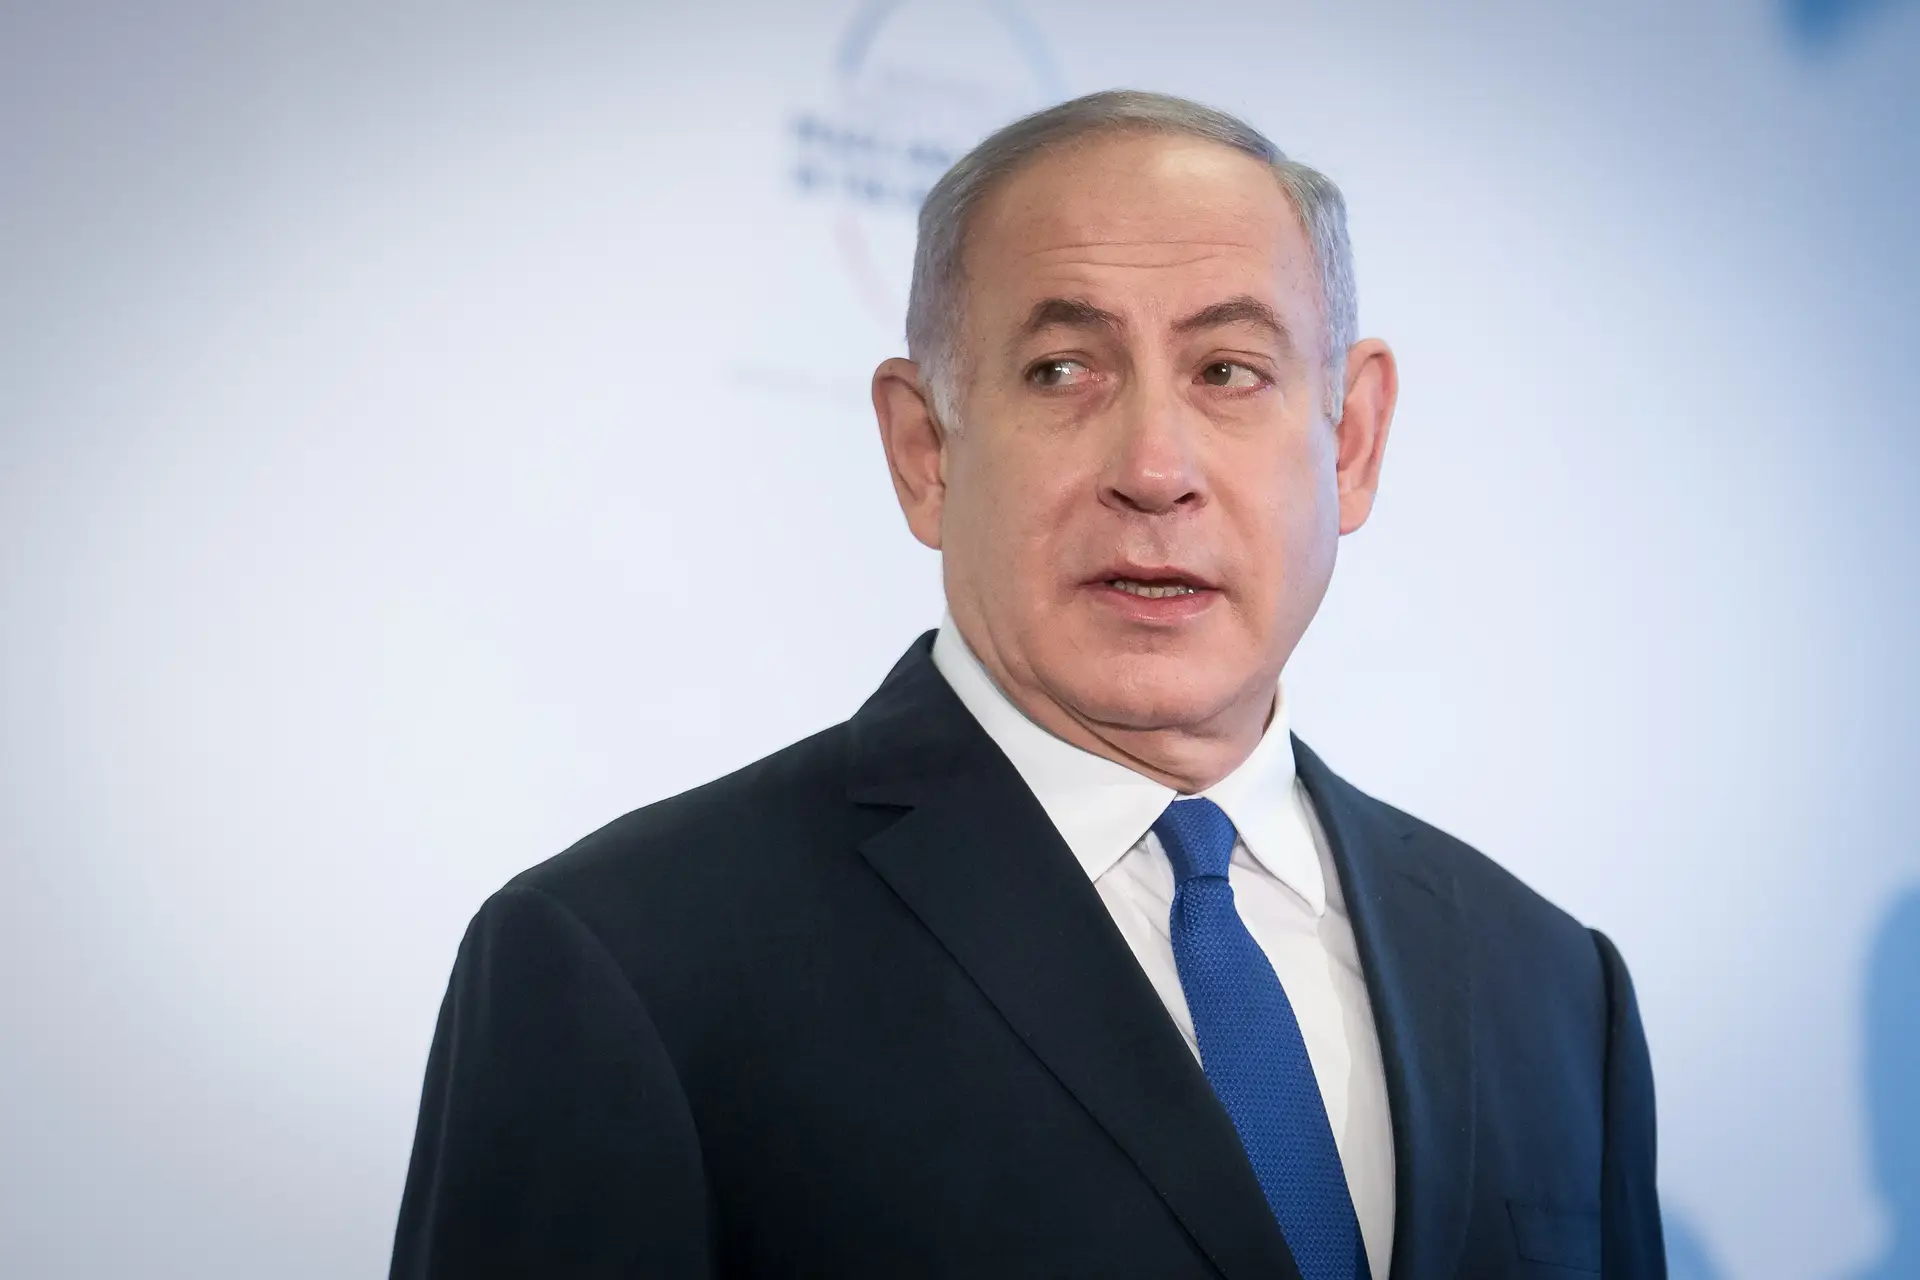 Partido de Benjamin Netanyahu chega a acordo com o partido de extrema-direita Noam